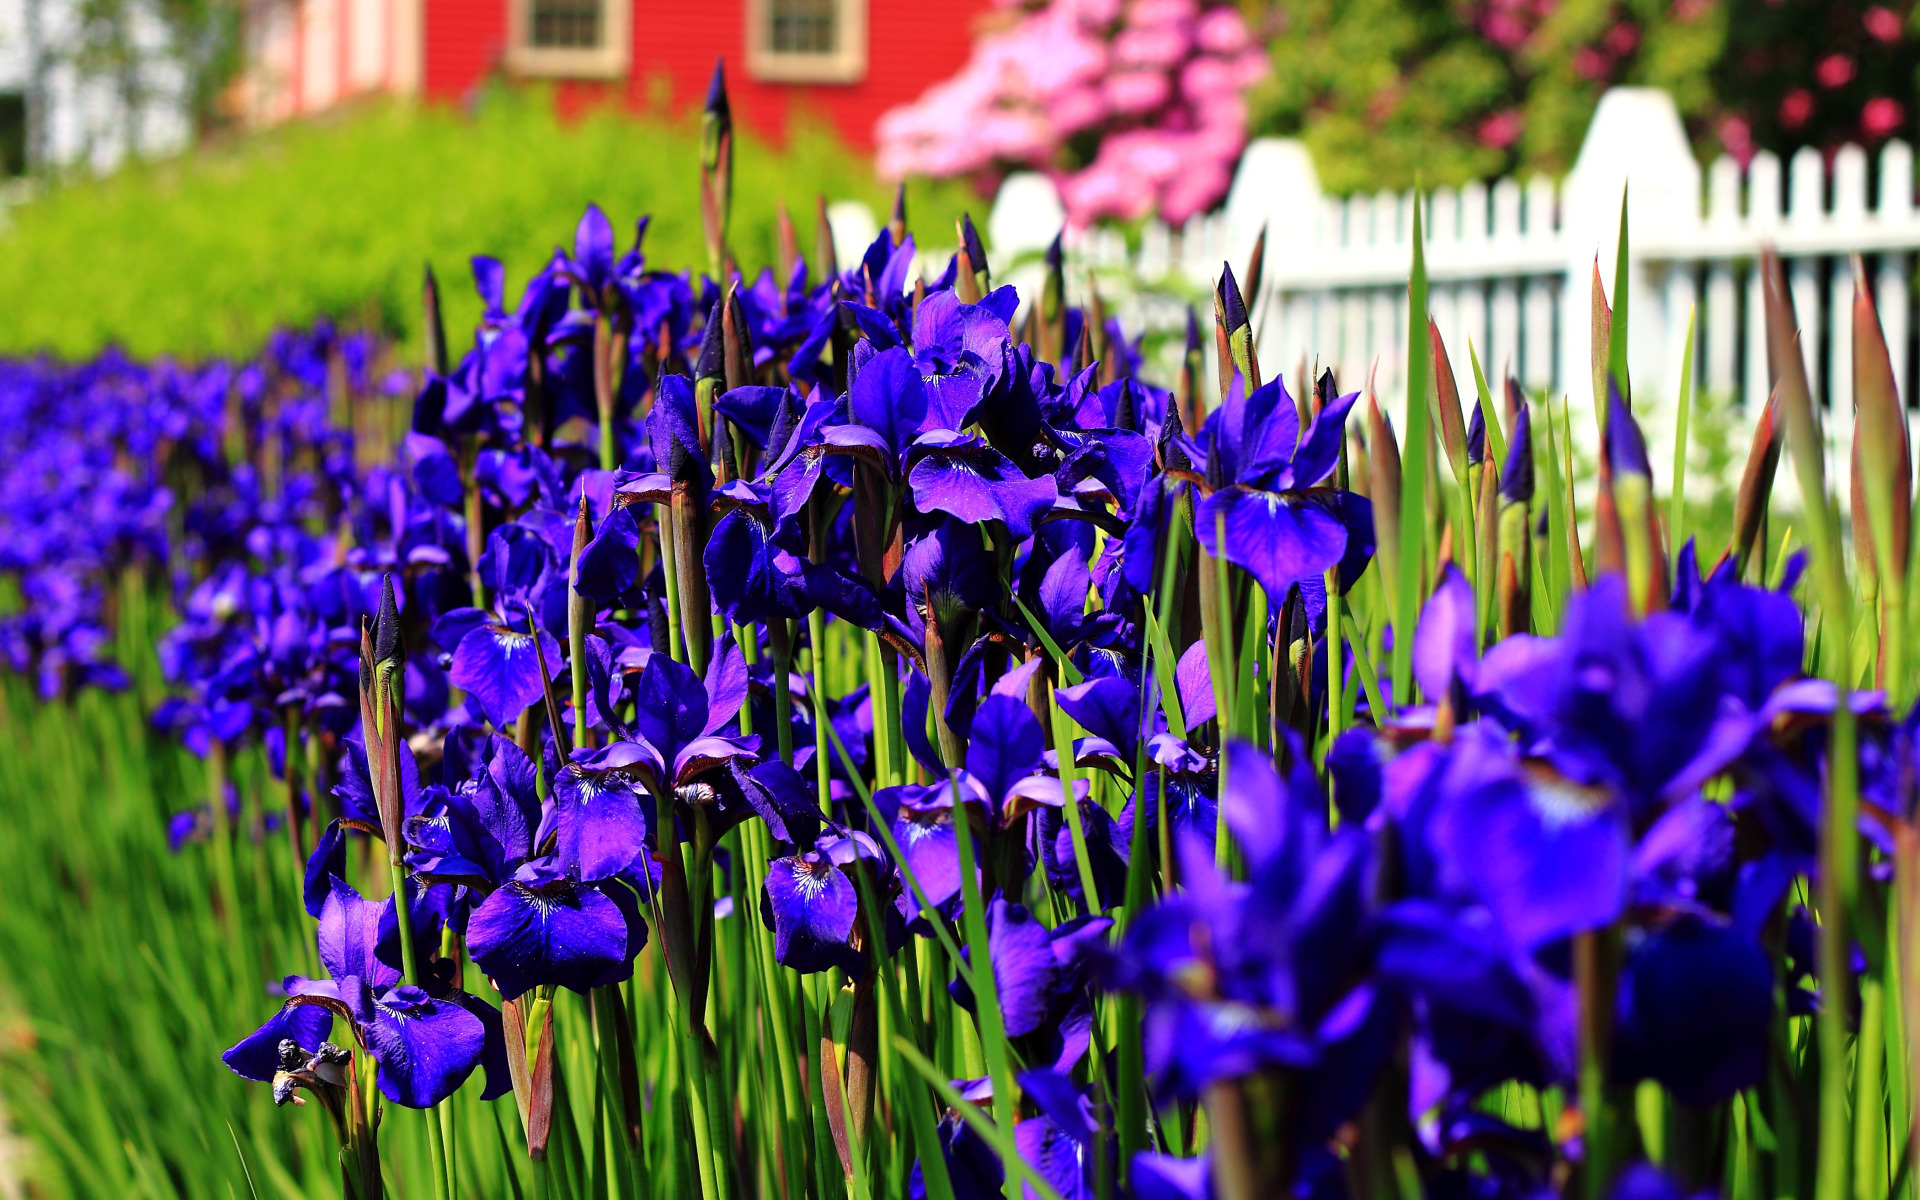 Spring, May, Spring, Flowering, Purple flowers, May, Flowering, Purple flowers